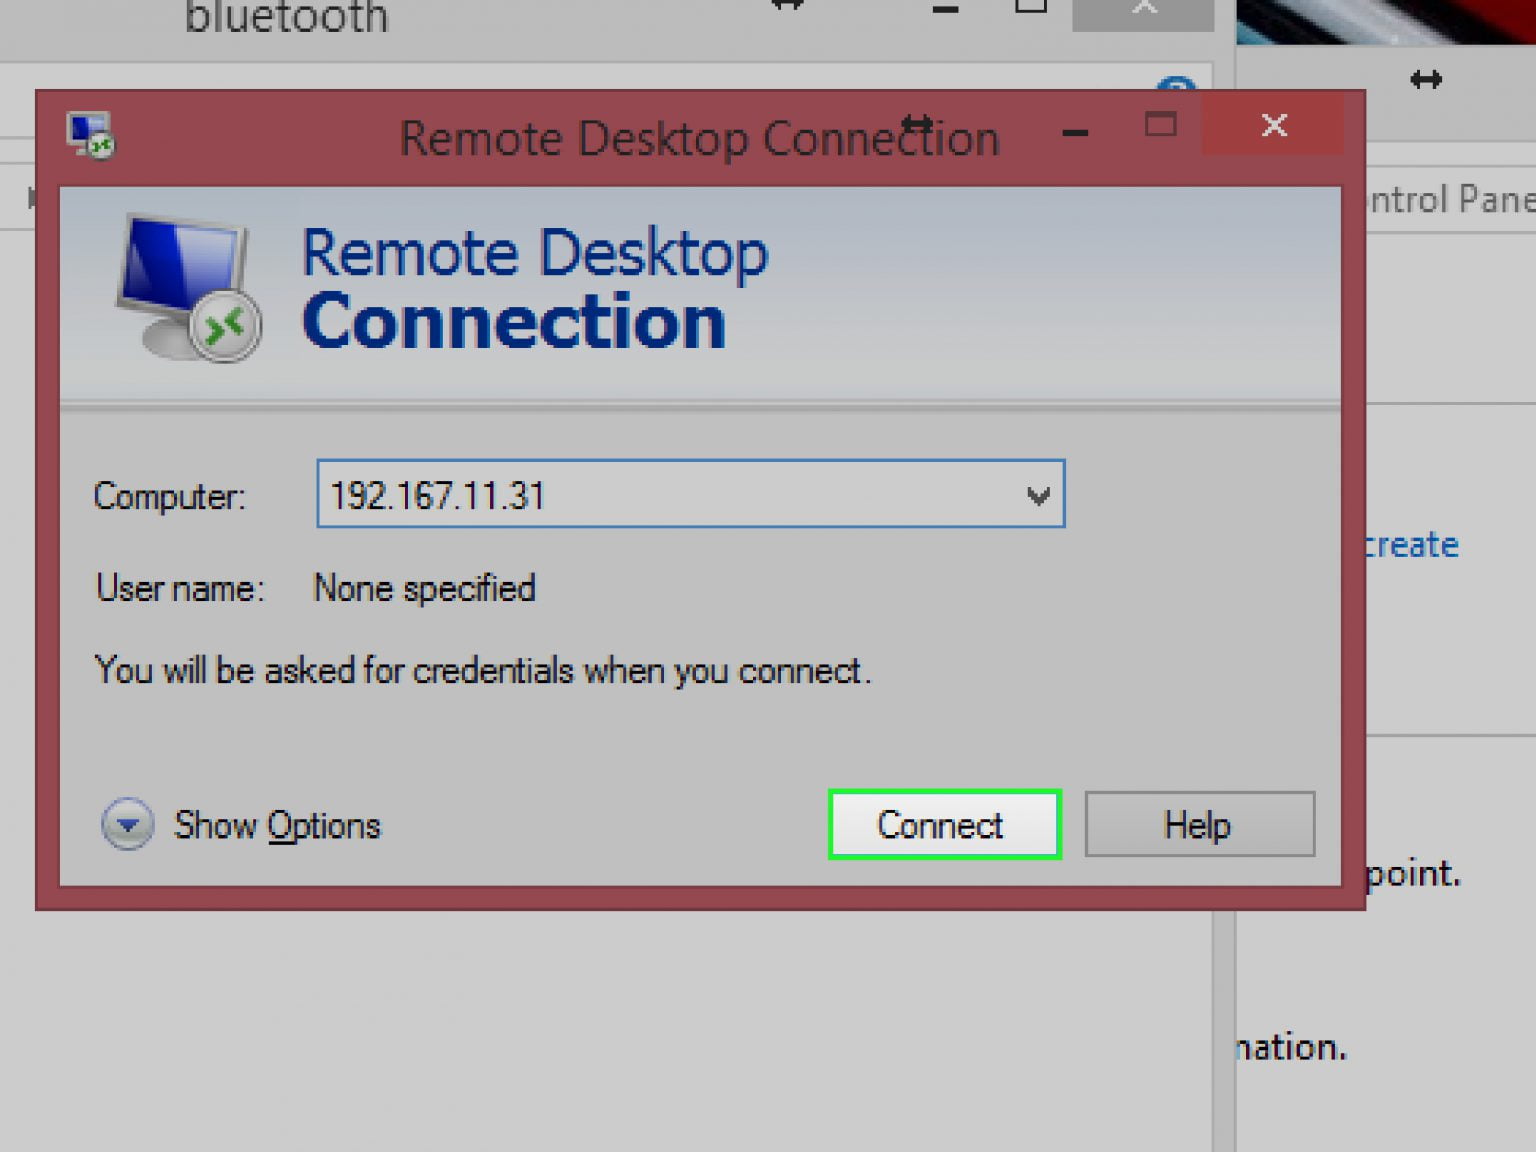 remote desktop connection manager v2 7 windows 10 download